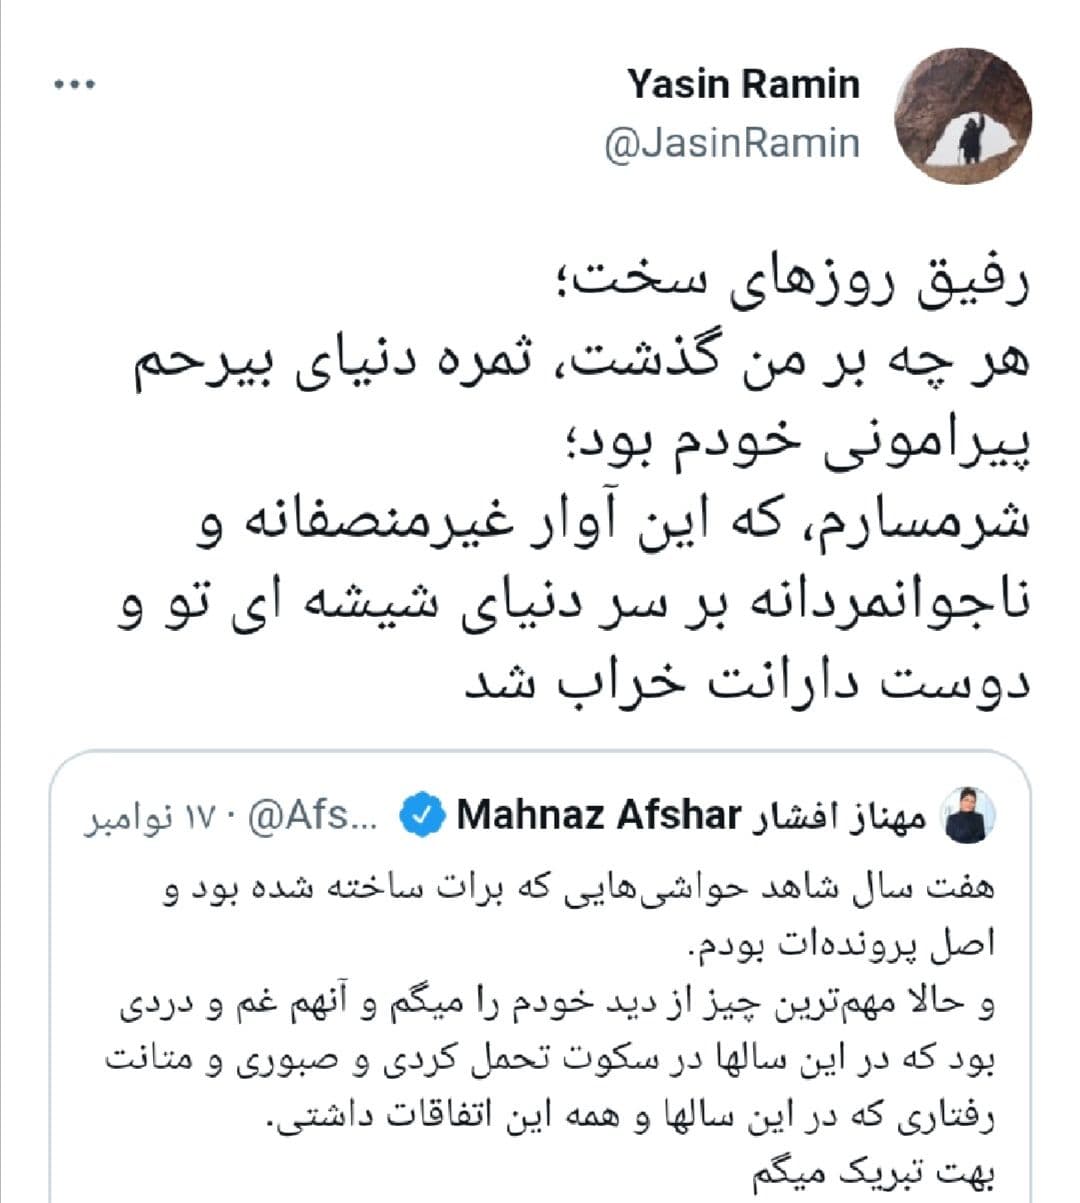 واکنش یاسین رامین به توییت مهناز افشار، پس از تبرئه